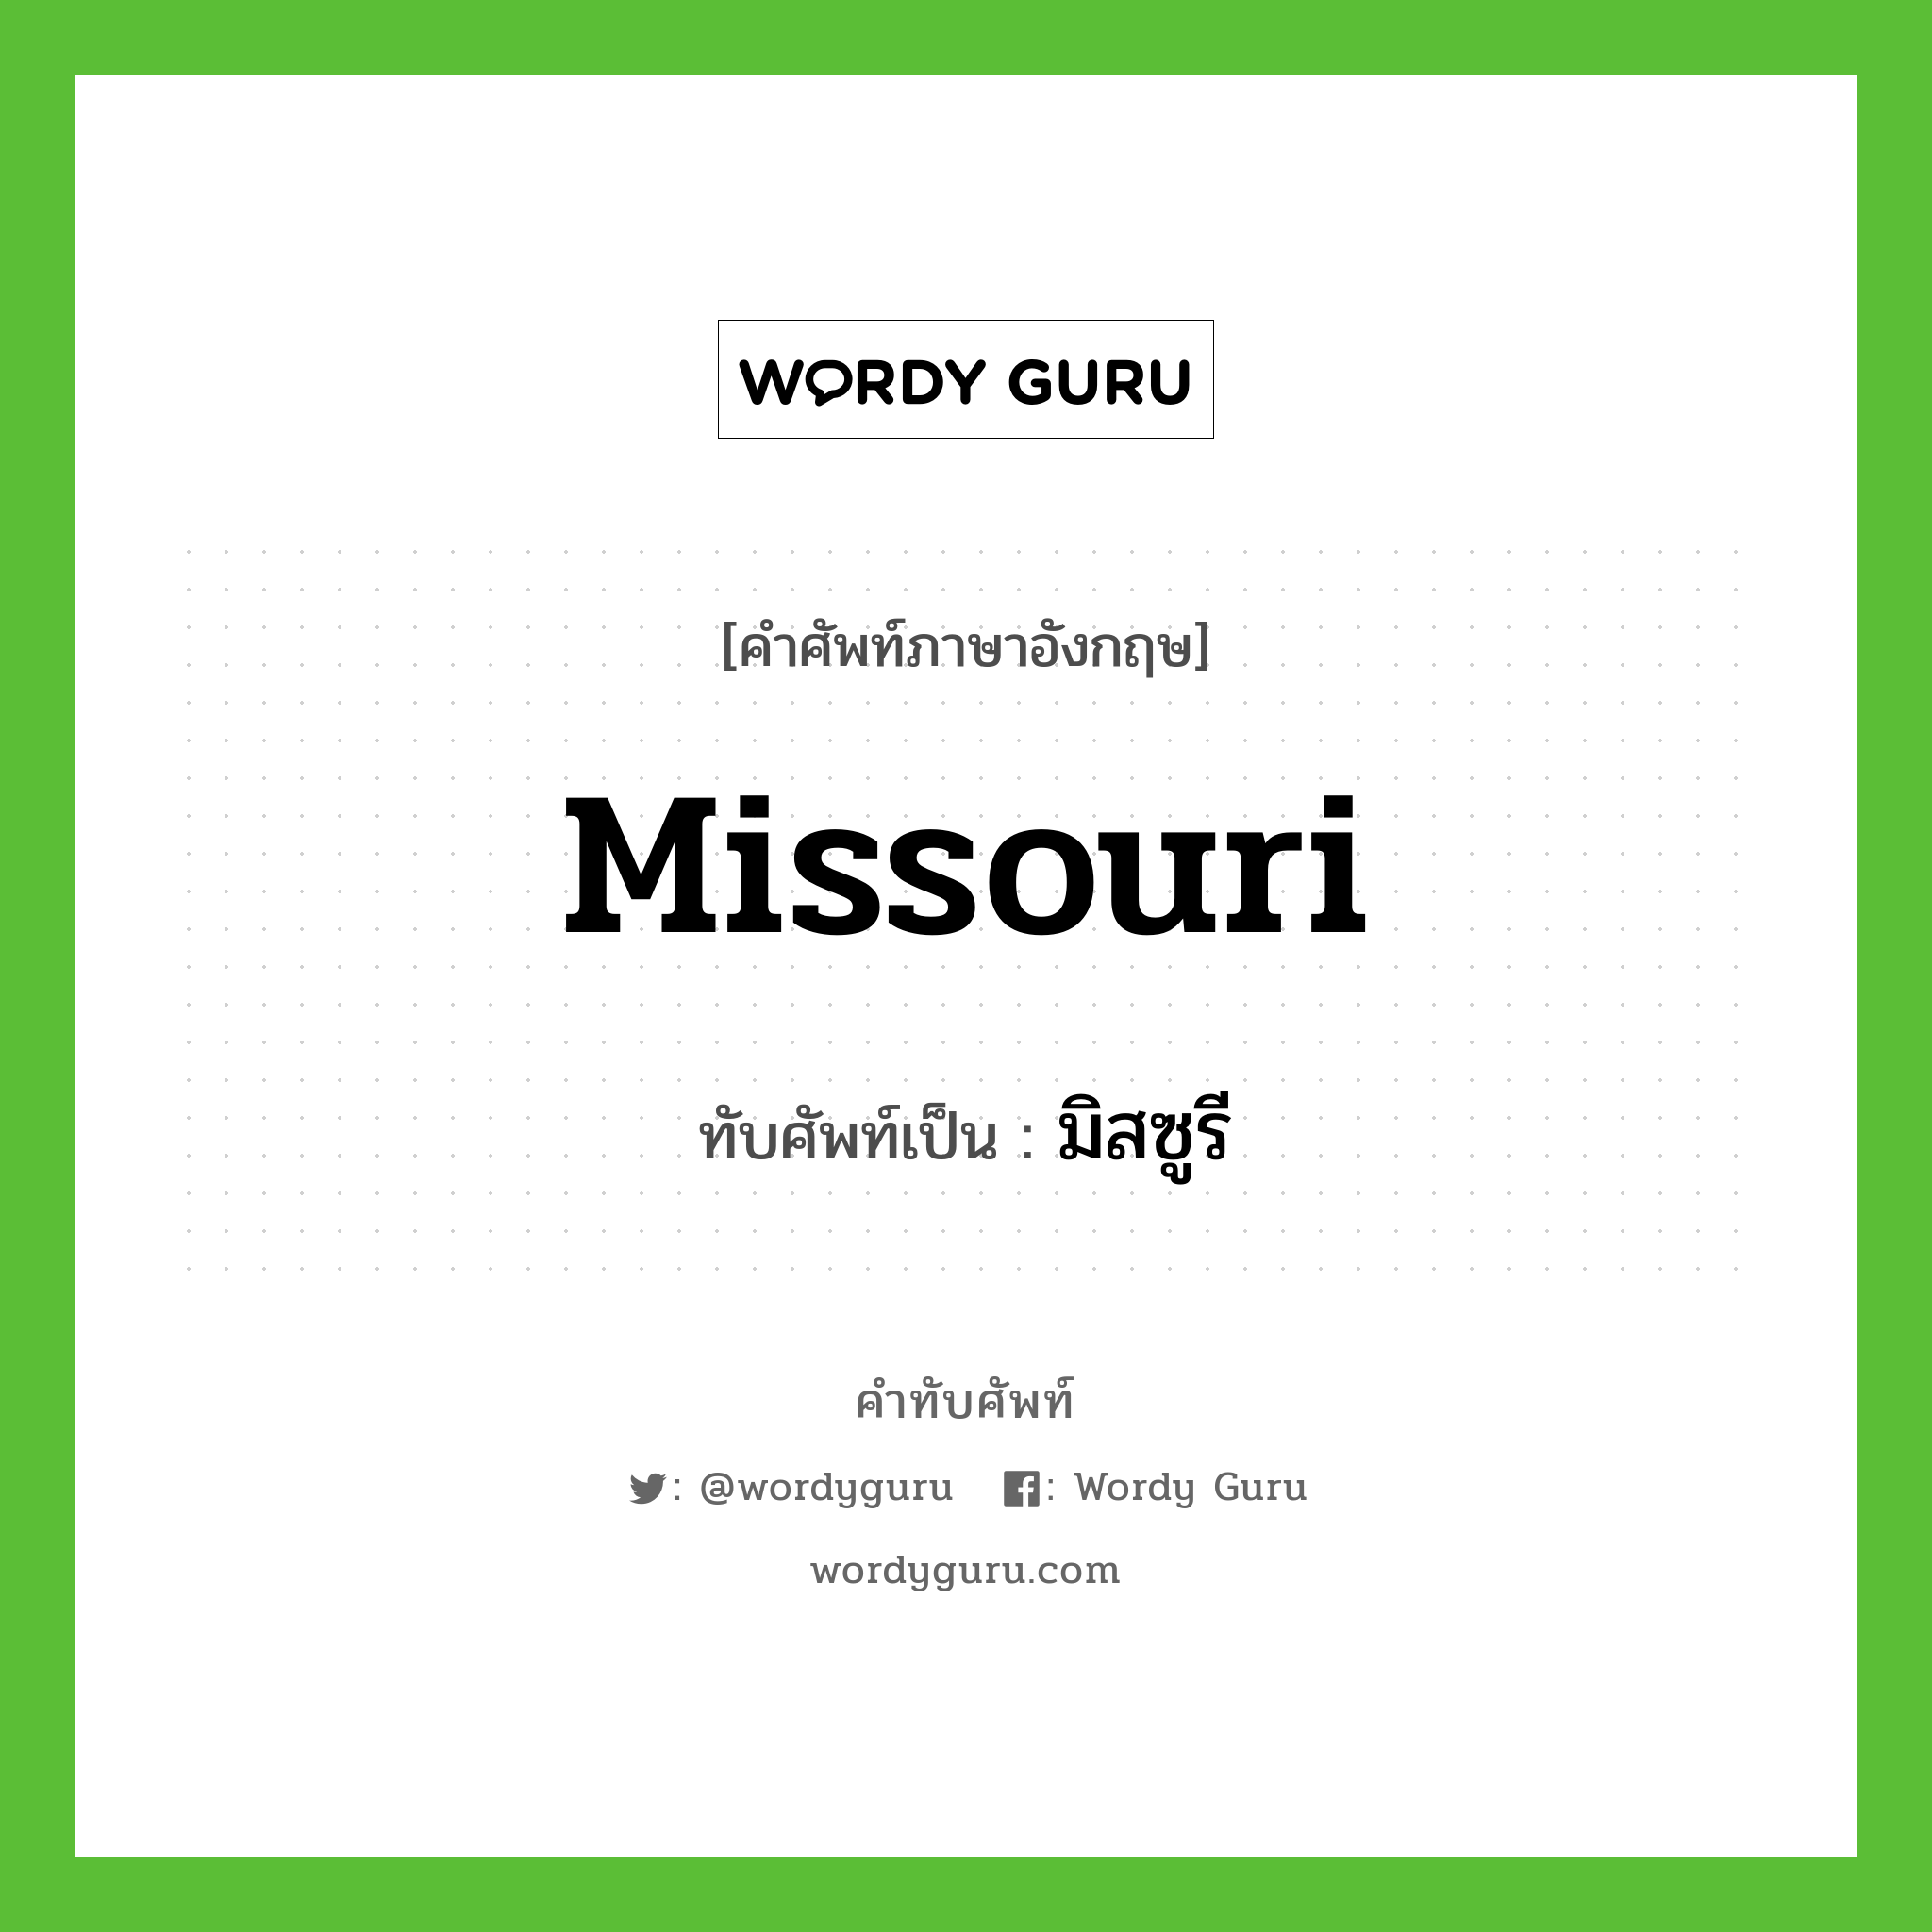 Missouri เขียนเป็นคำไทยว่าอะไร?, คำศัพท์ภาษาอังกฤษ Missouri ทับศัพท์เป็น มิสซูรี